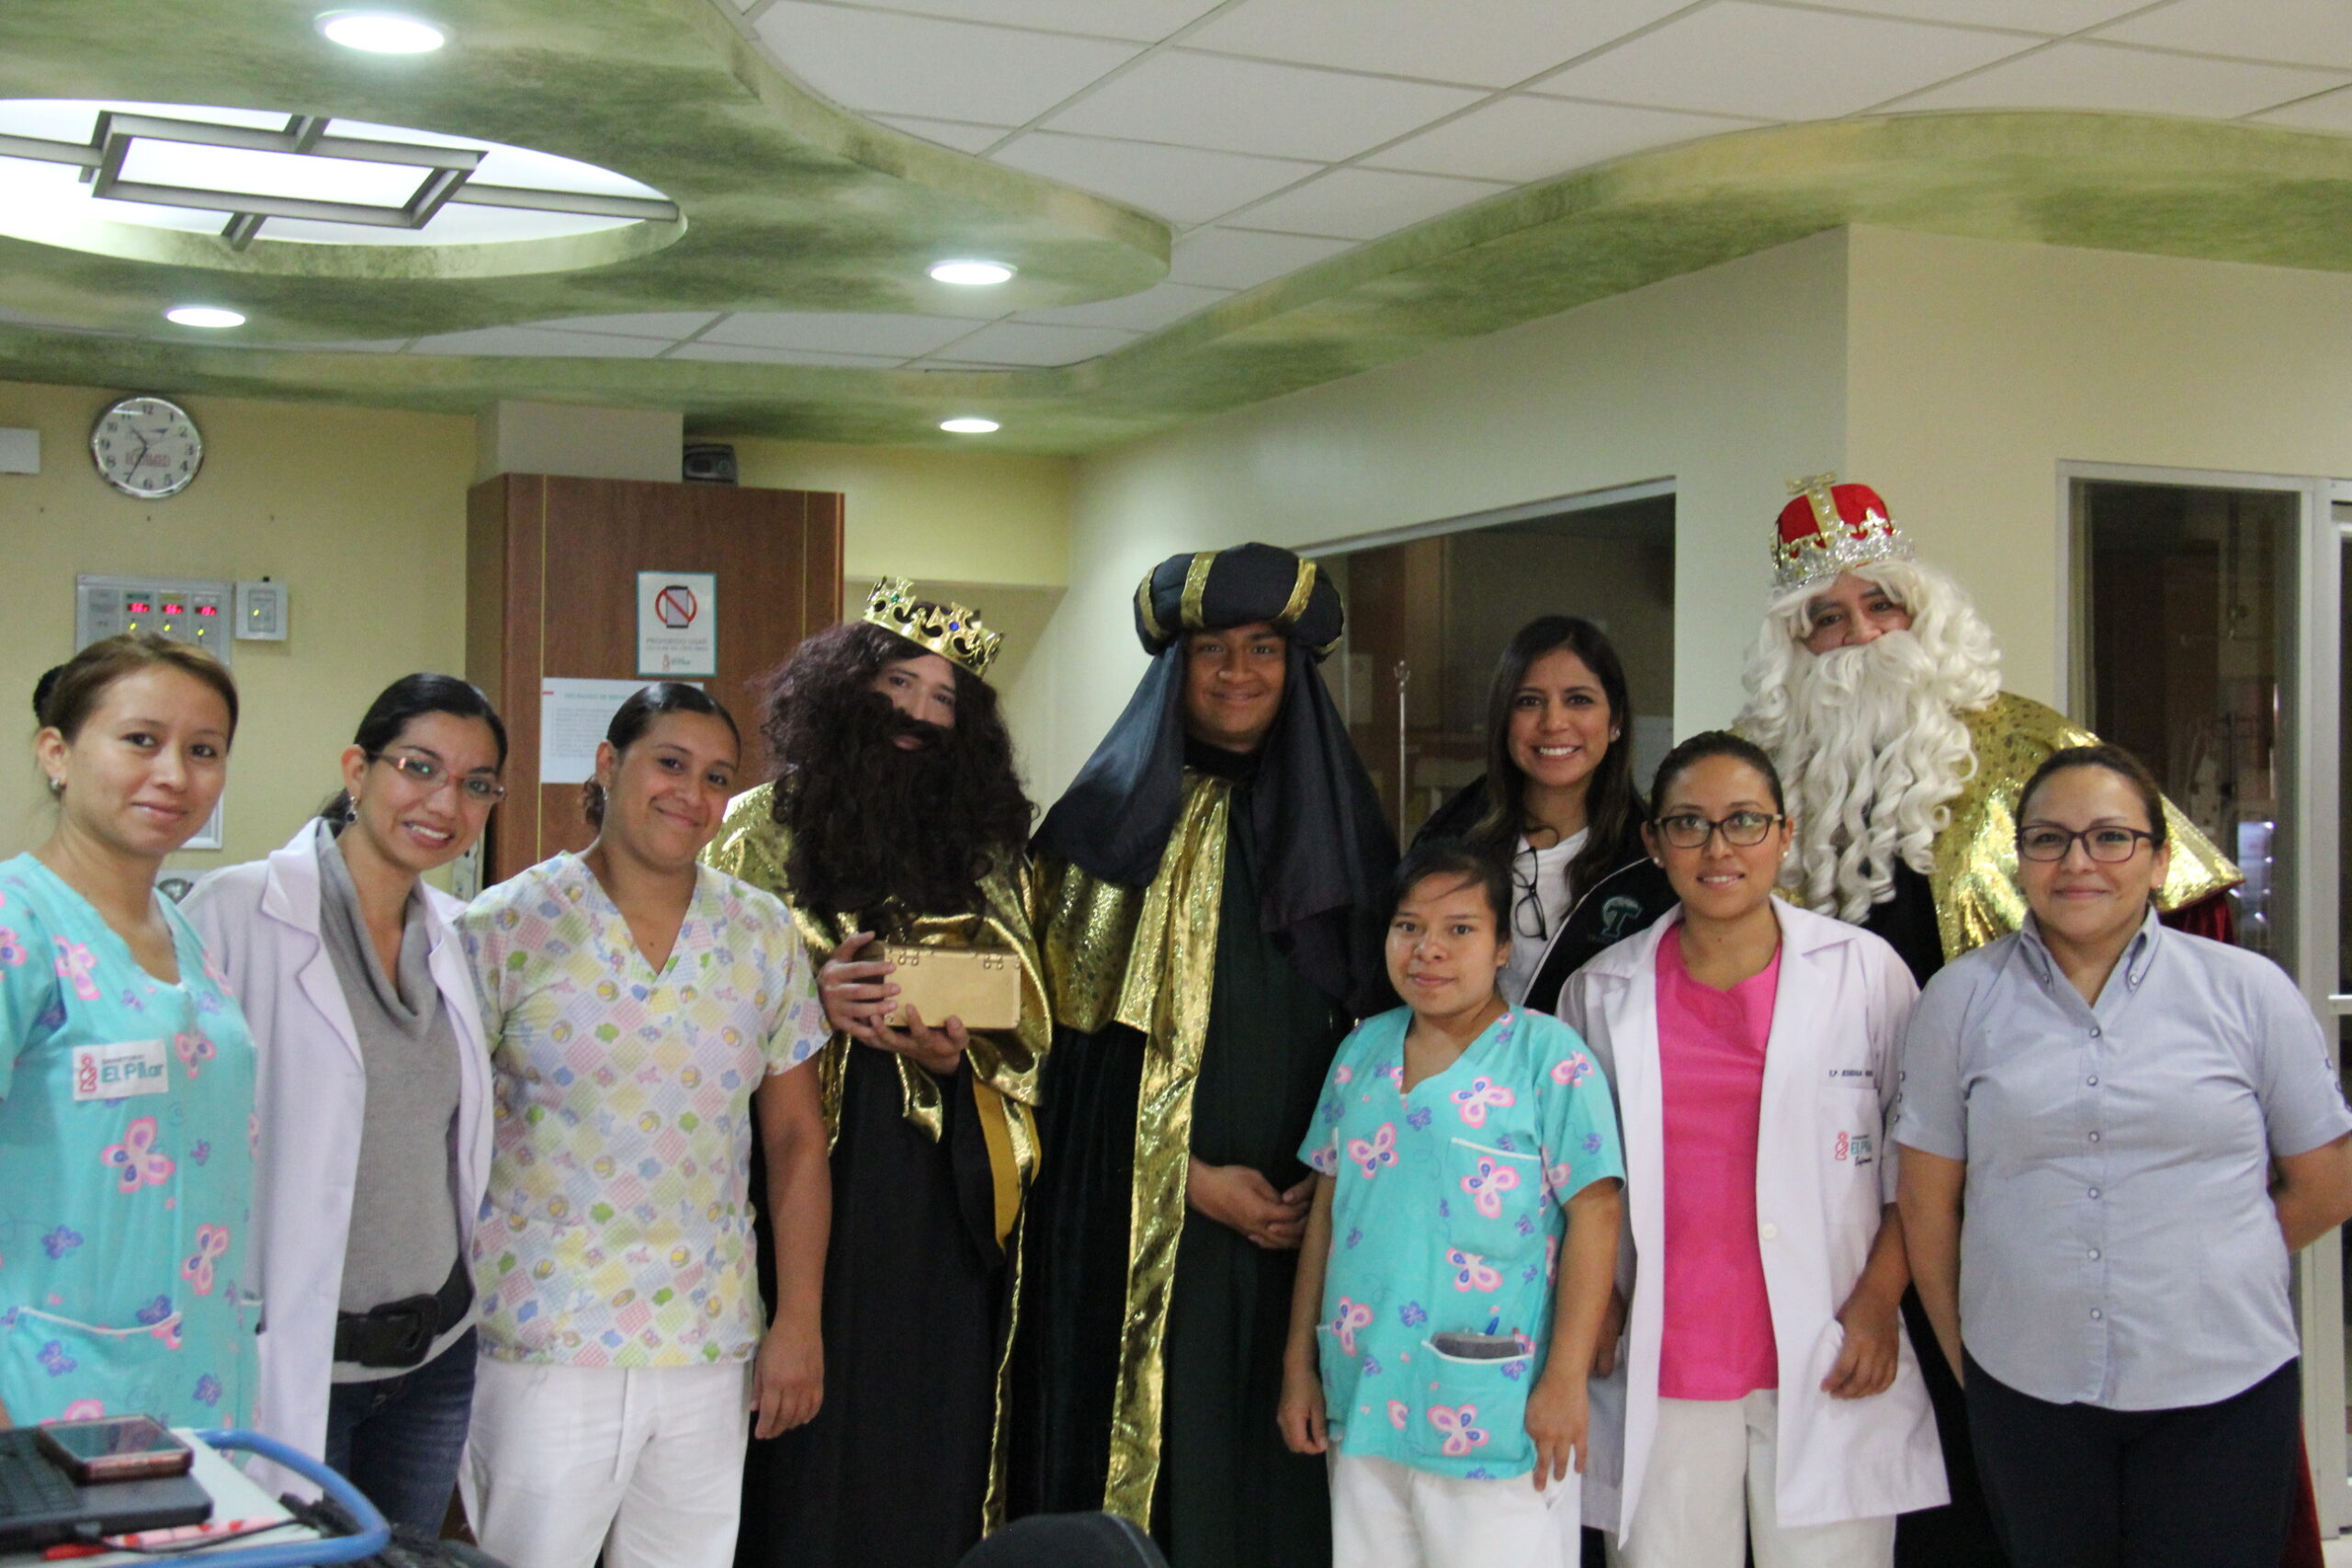 Los reyes magos visitaron la pediatría de Sanatorio El Pilar